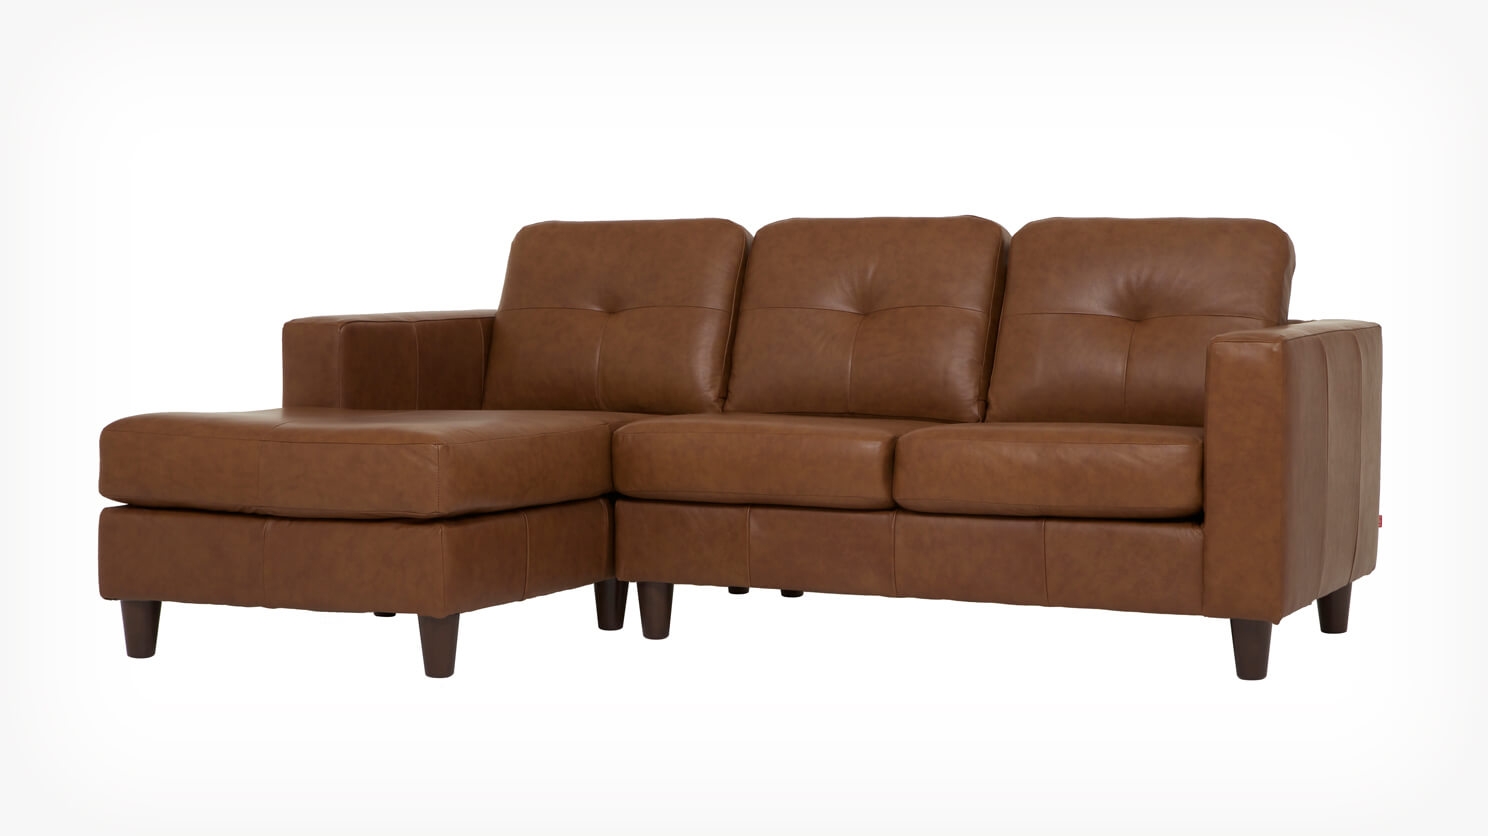 eq3 solo leather sofa